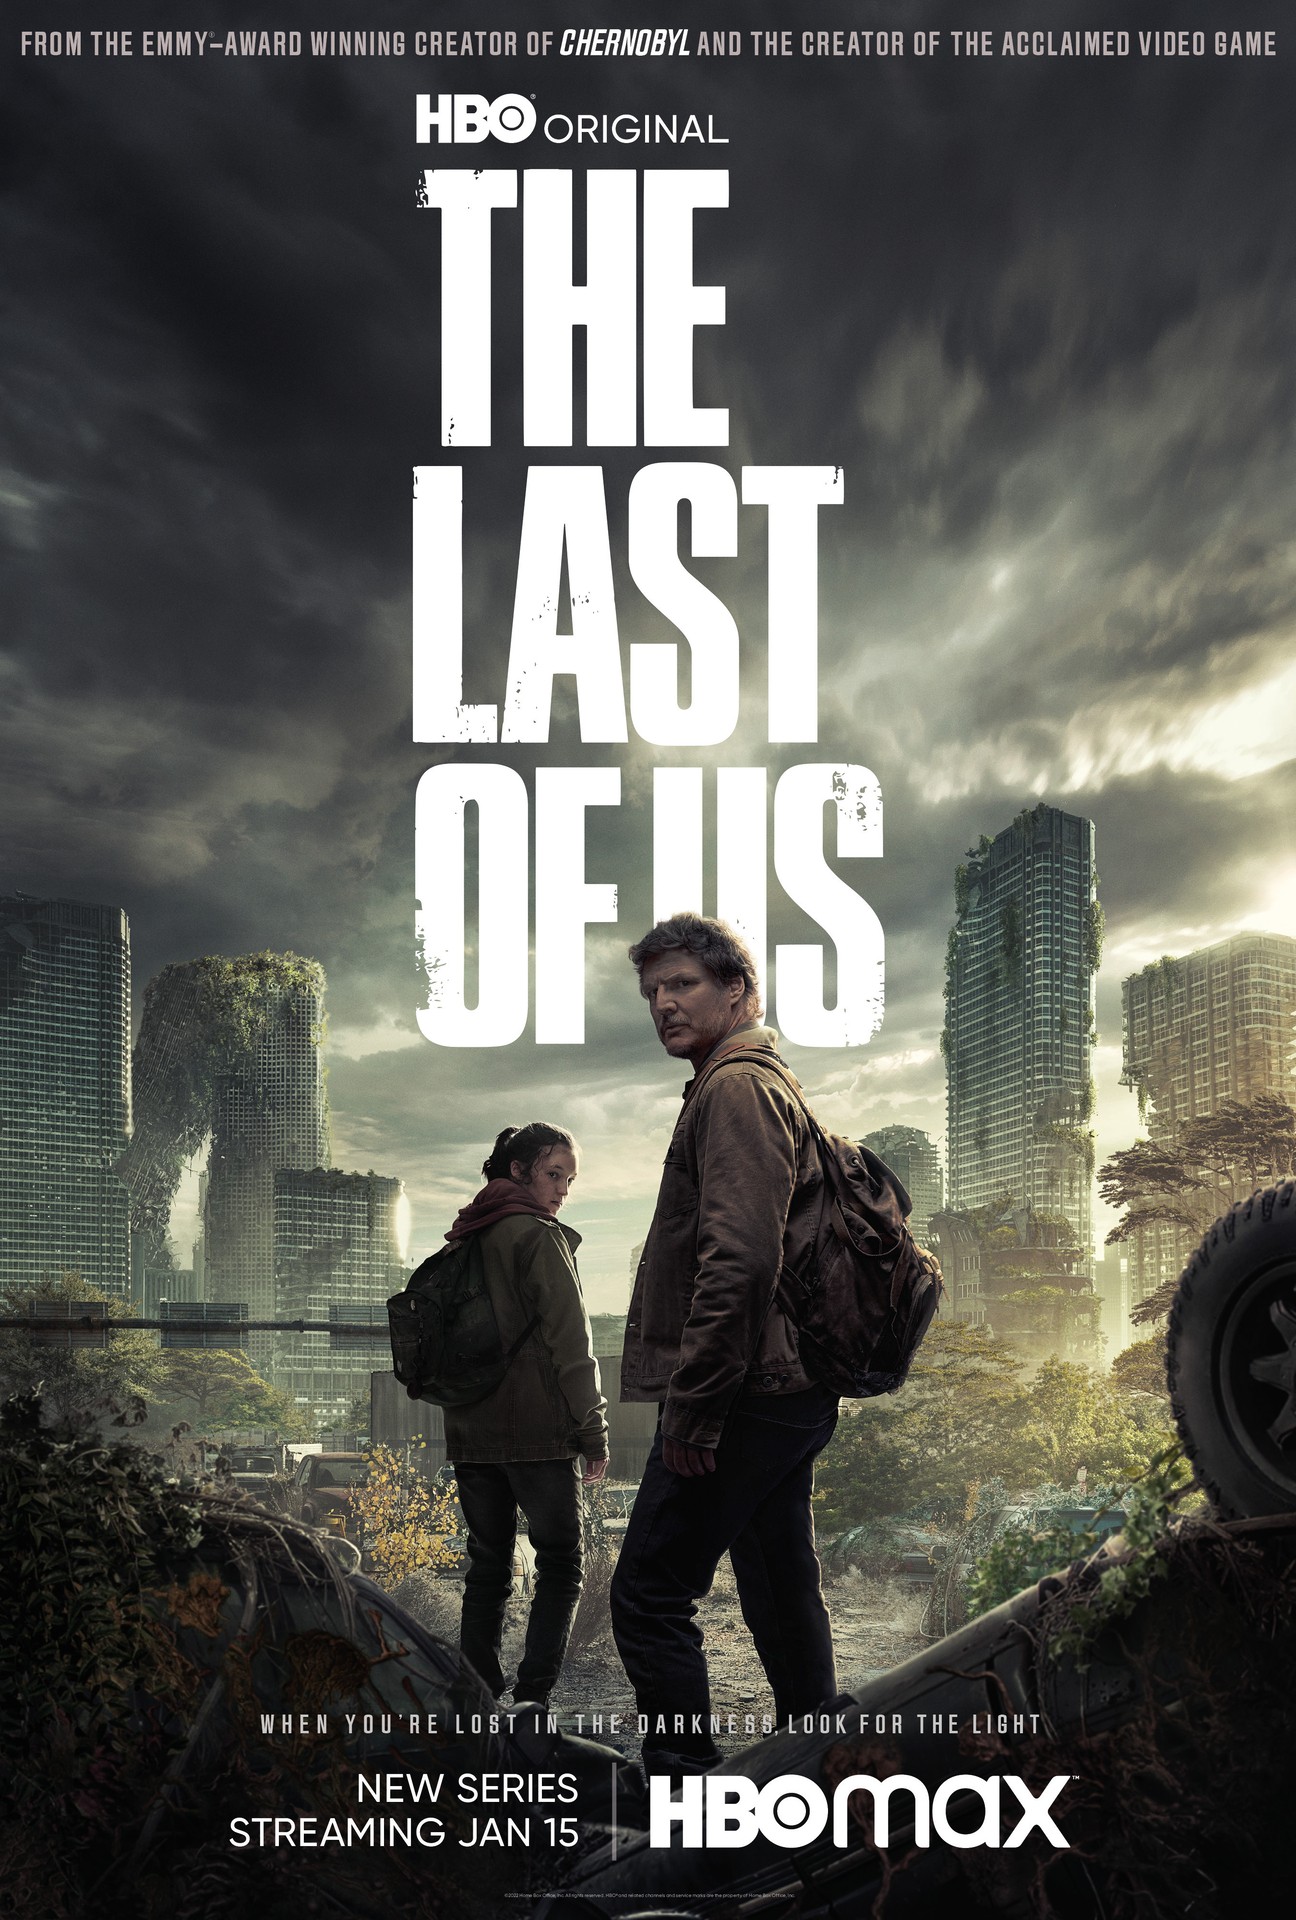 [รีวิวซีรีส์] The Last of Us: เธอกับเขา และเรื่องราวของ “เรา” สู่การเป็นซีรีส์ซอมบี้อันดับ 1 ของโลก